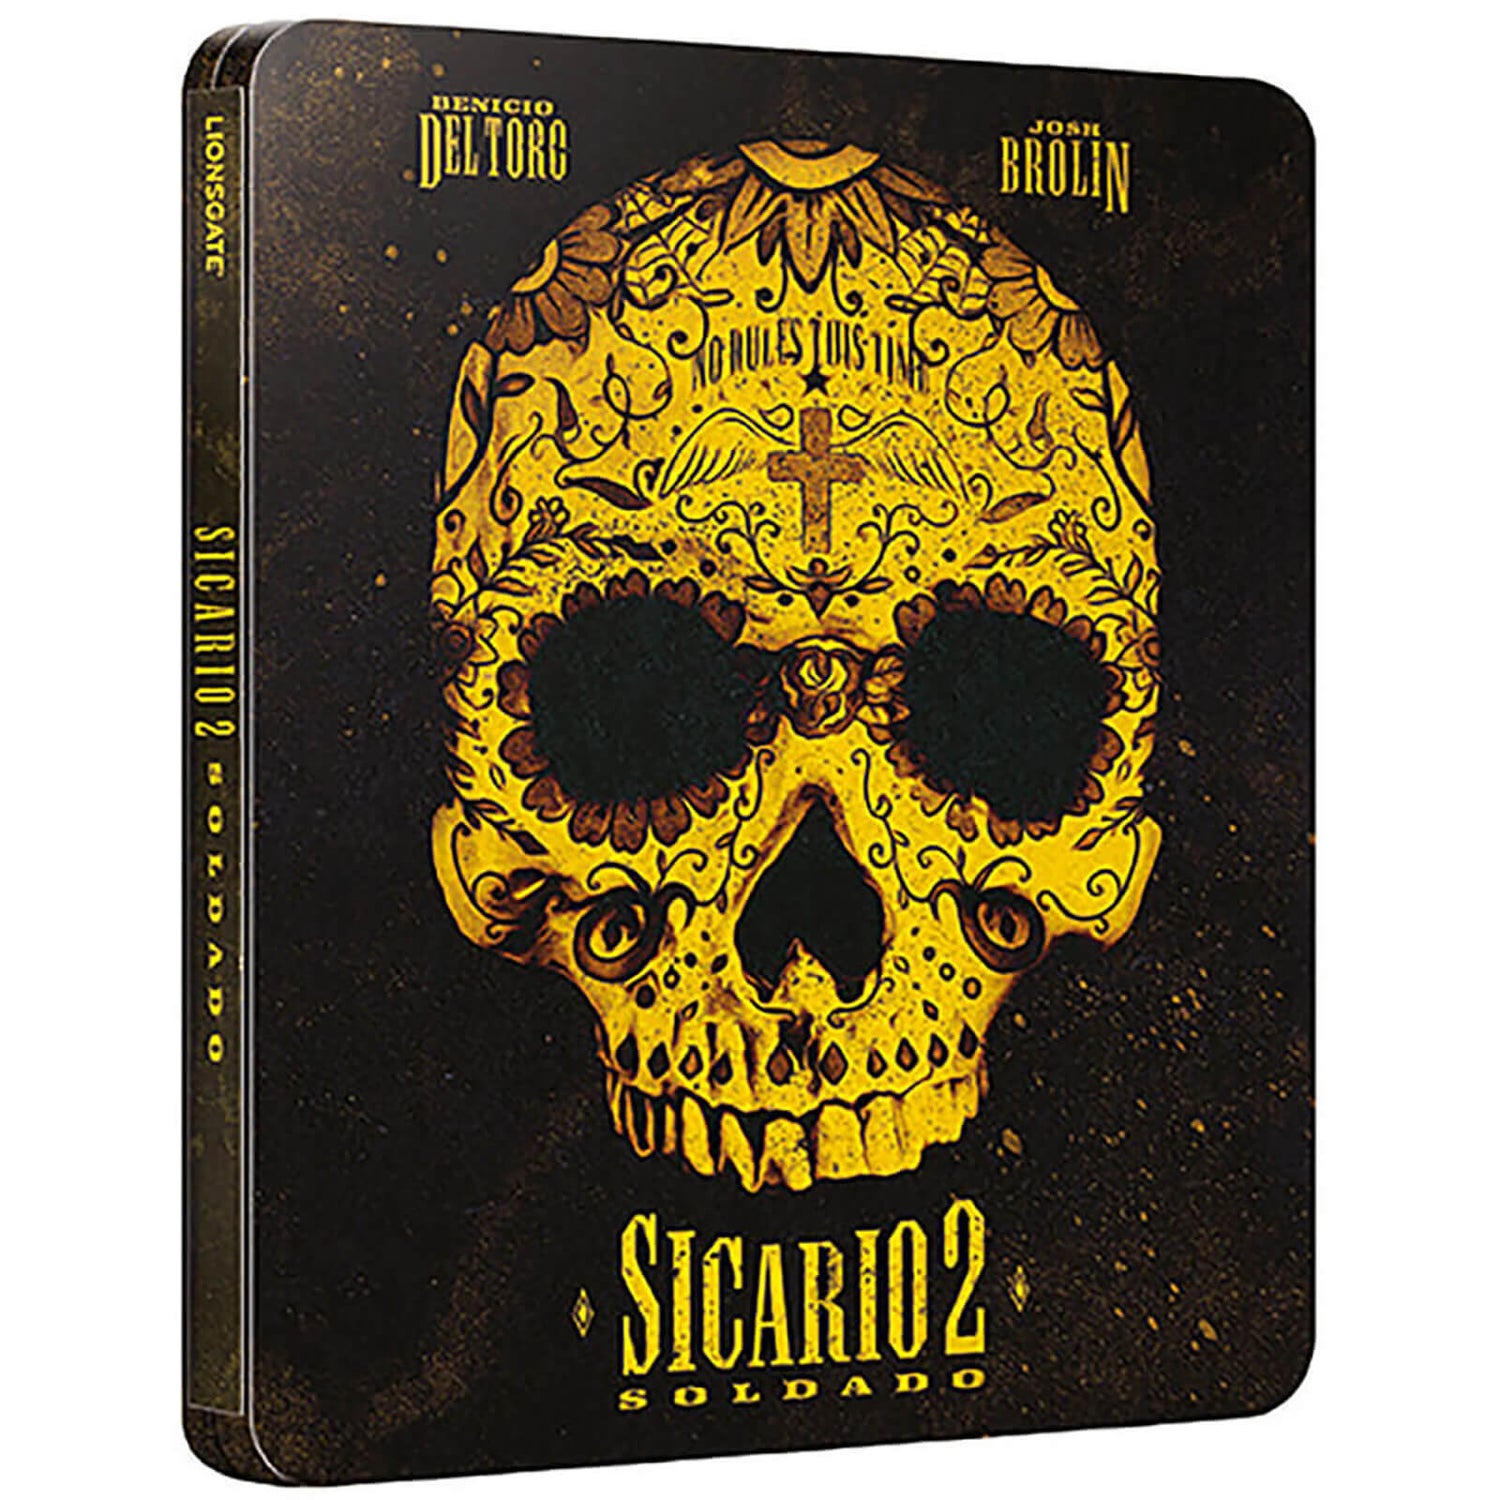 Sicario 2: Soldado 4K Ultra HD (Inklusive Blu-Ray Version) - Zavvi Exclusive Steelbook